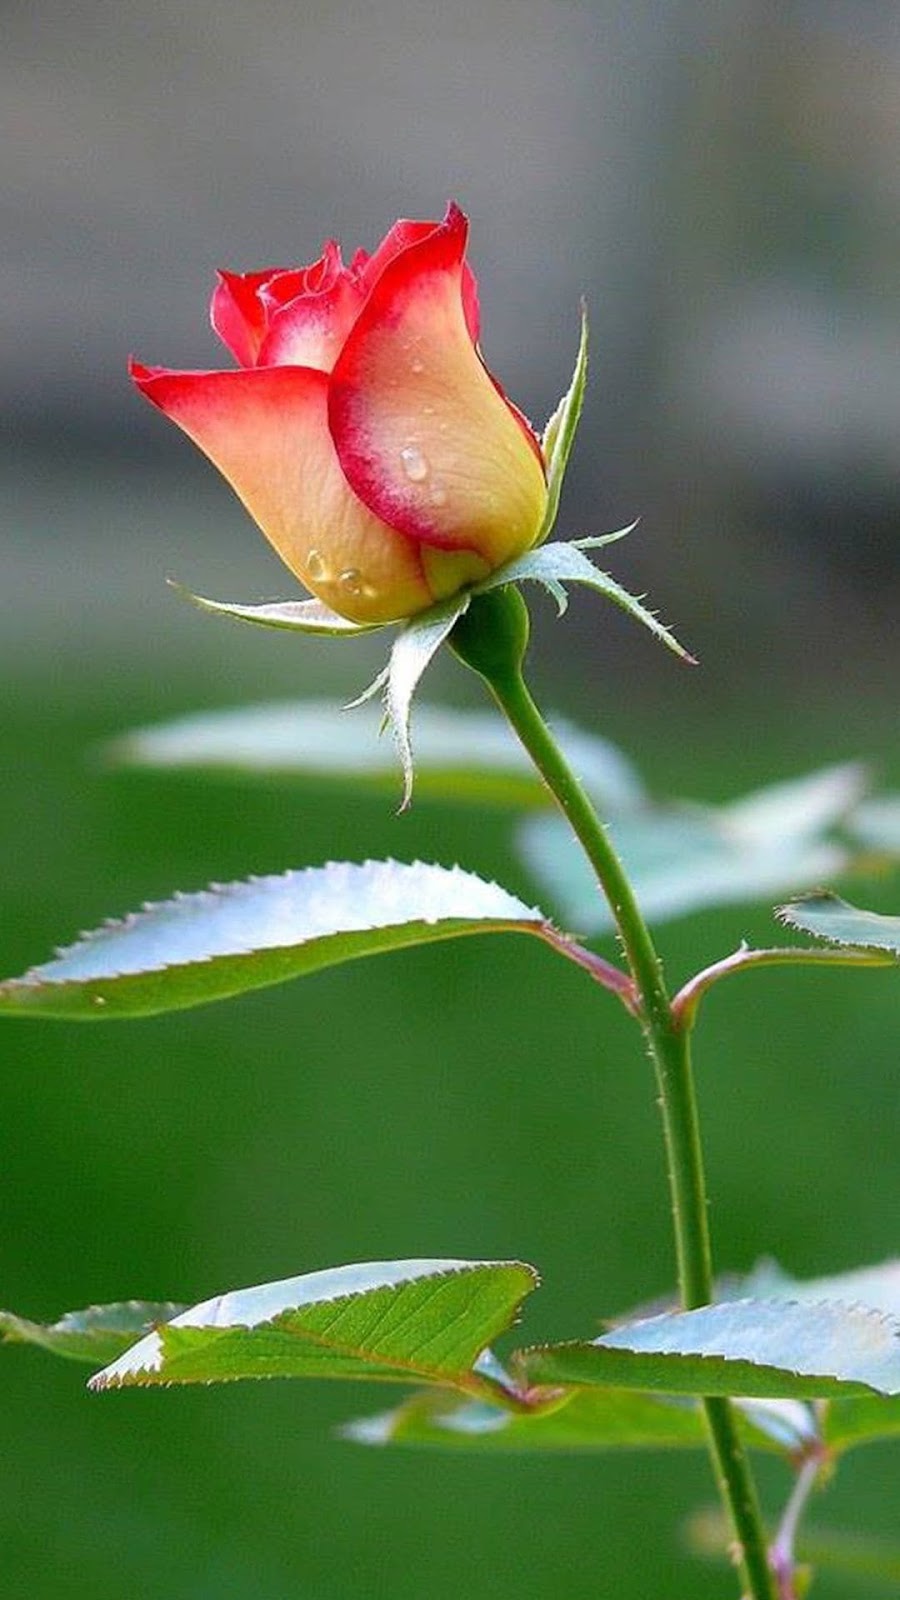 New Rose Flower Images - Rose Garden Images - rose garden - NeotericIT.com